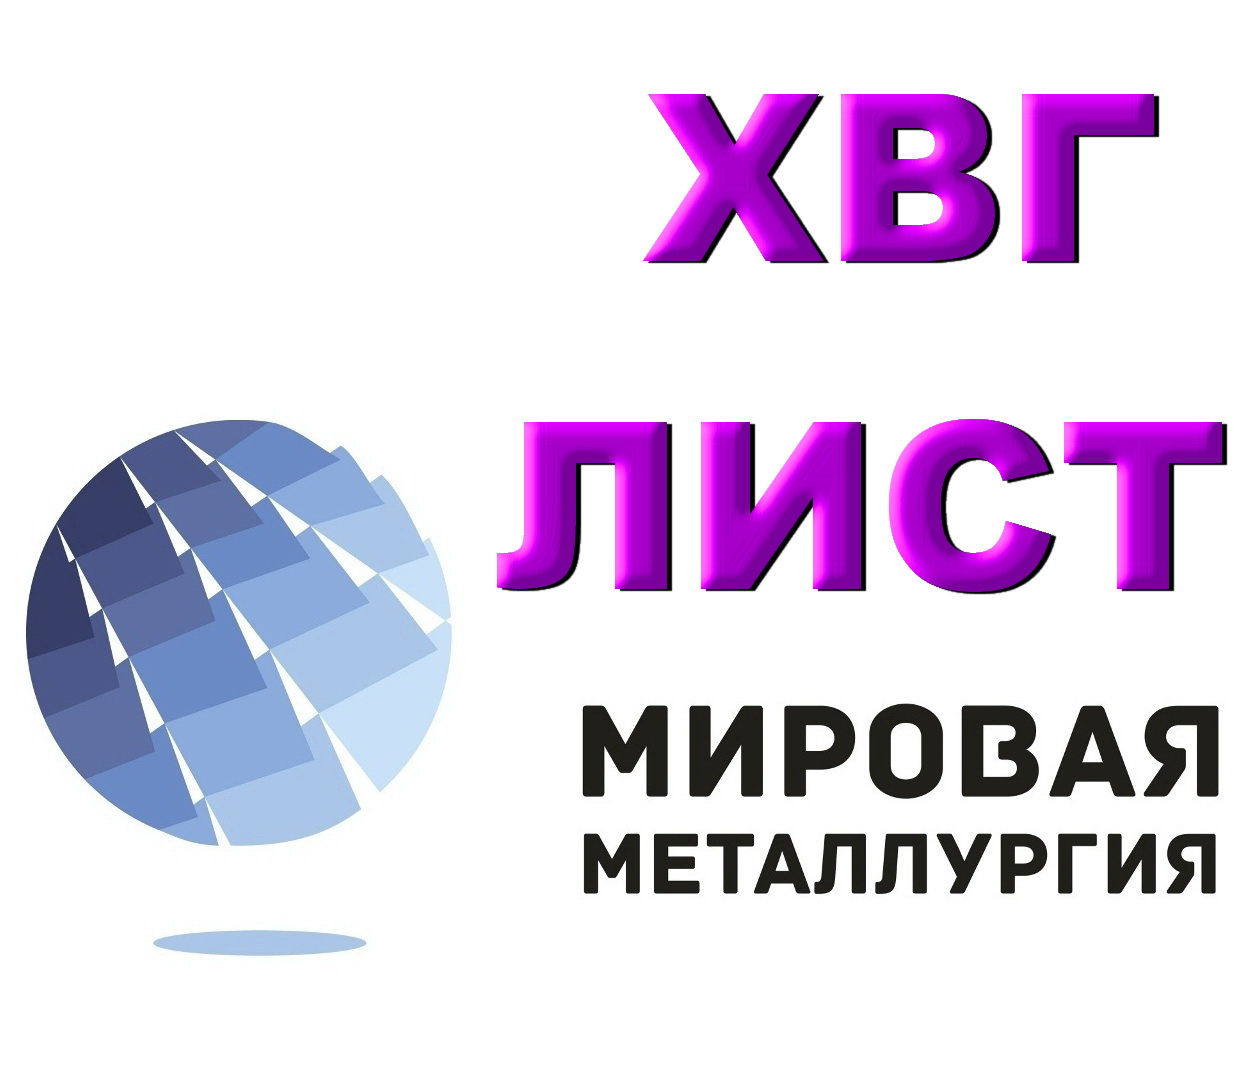 Продам сталь ХВГ. Лист ХВГ, полоса ХВГ в городе Екатеринбург, фото 1, телефон продавца: +7 (343) 202-21-64